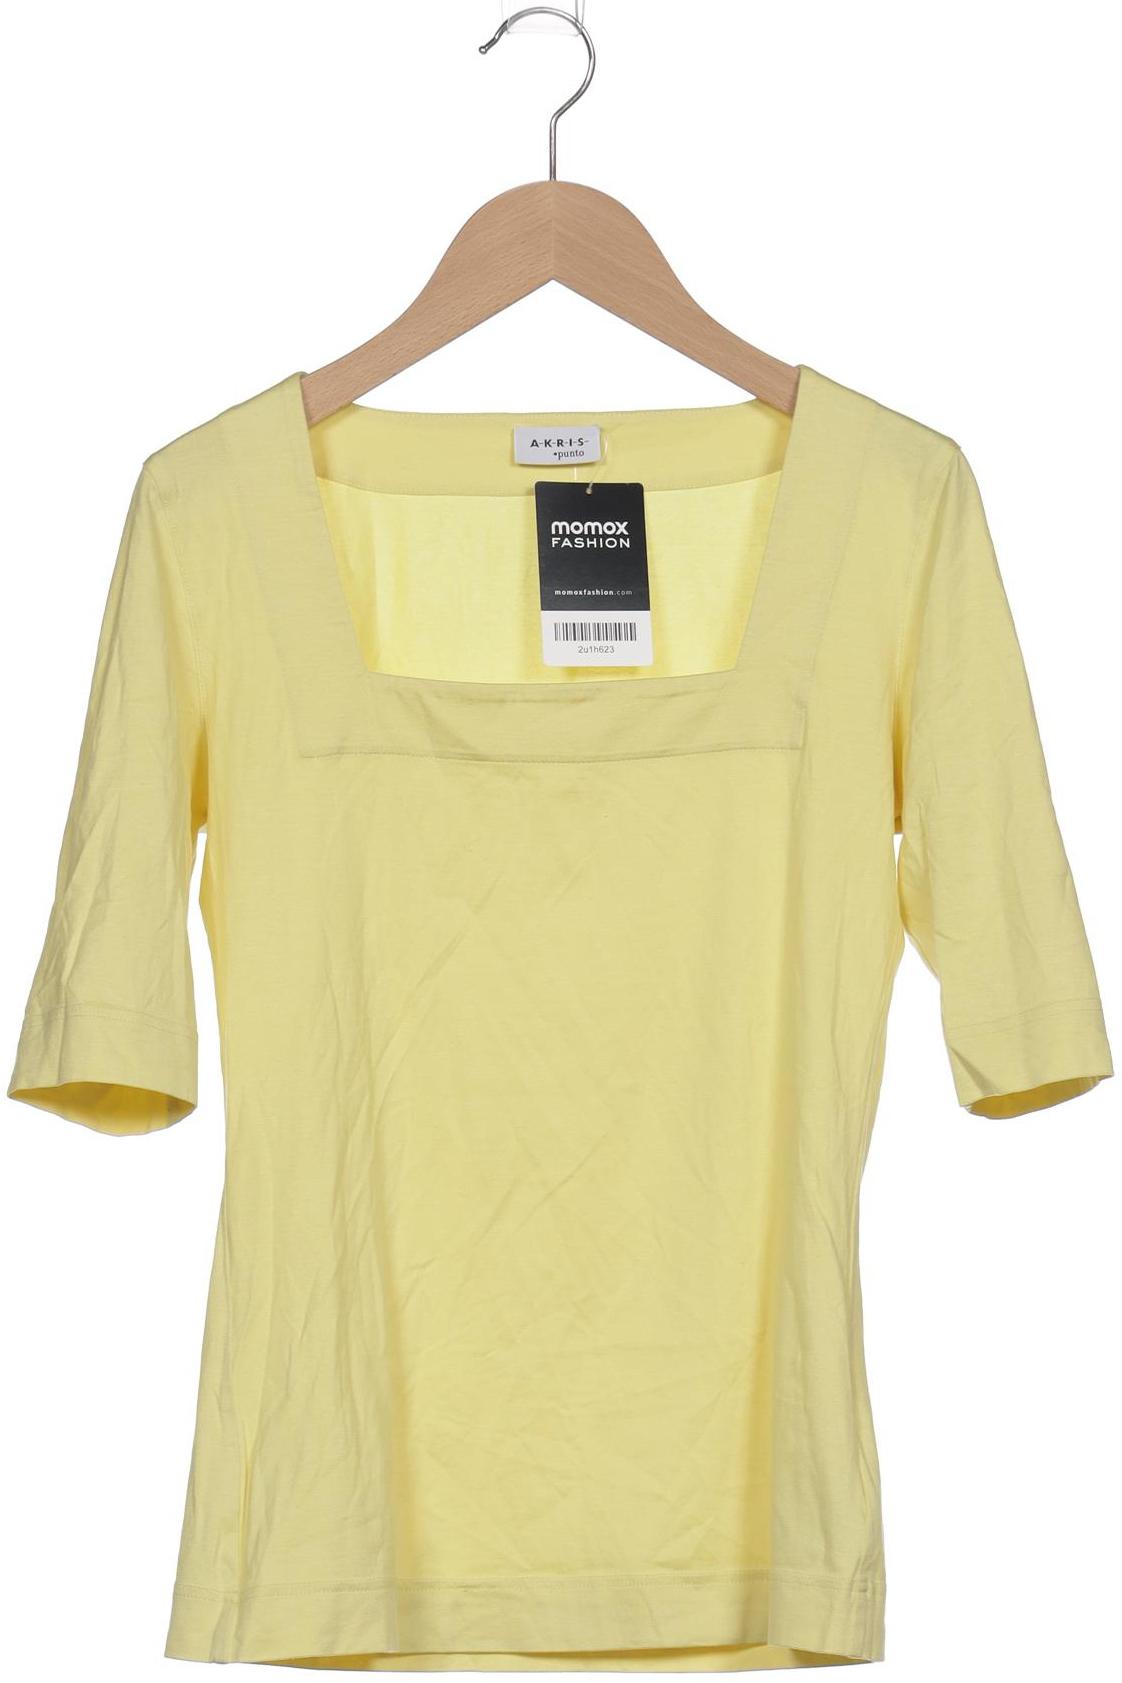 Akris Damen T-Shirt, gelb, Gr. 34 von akris